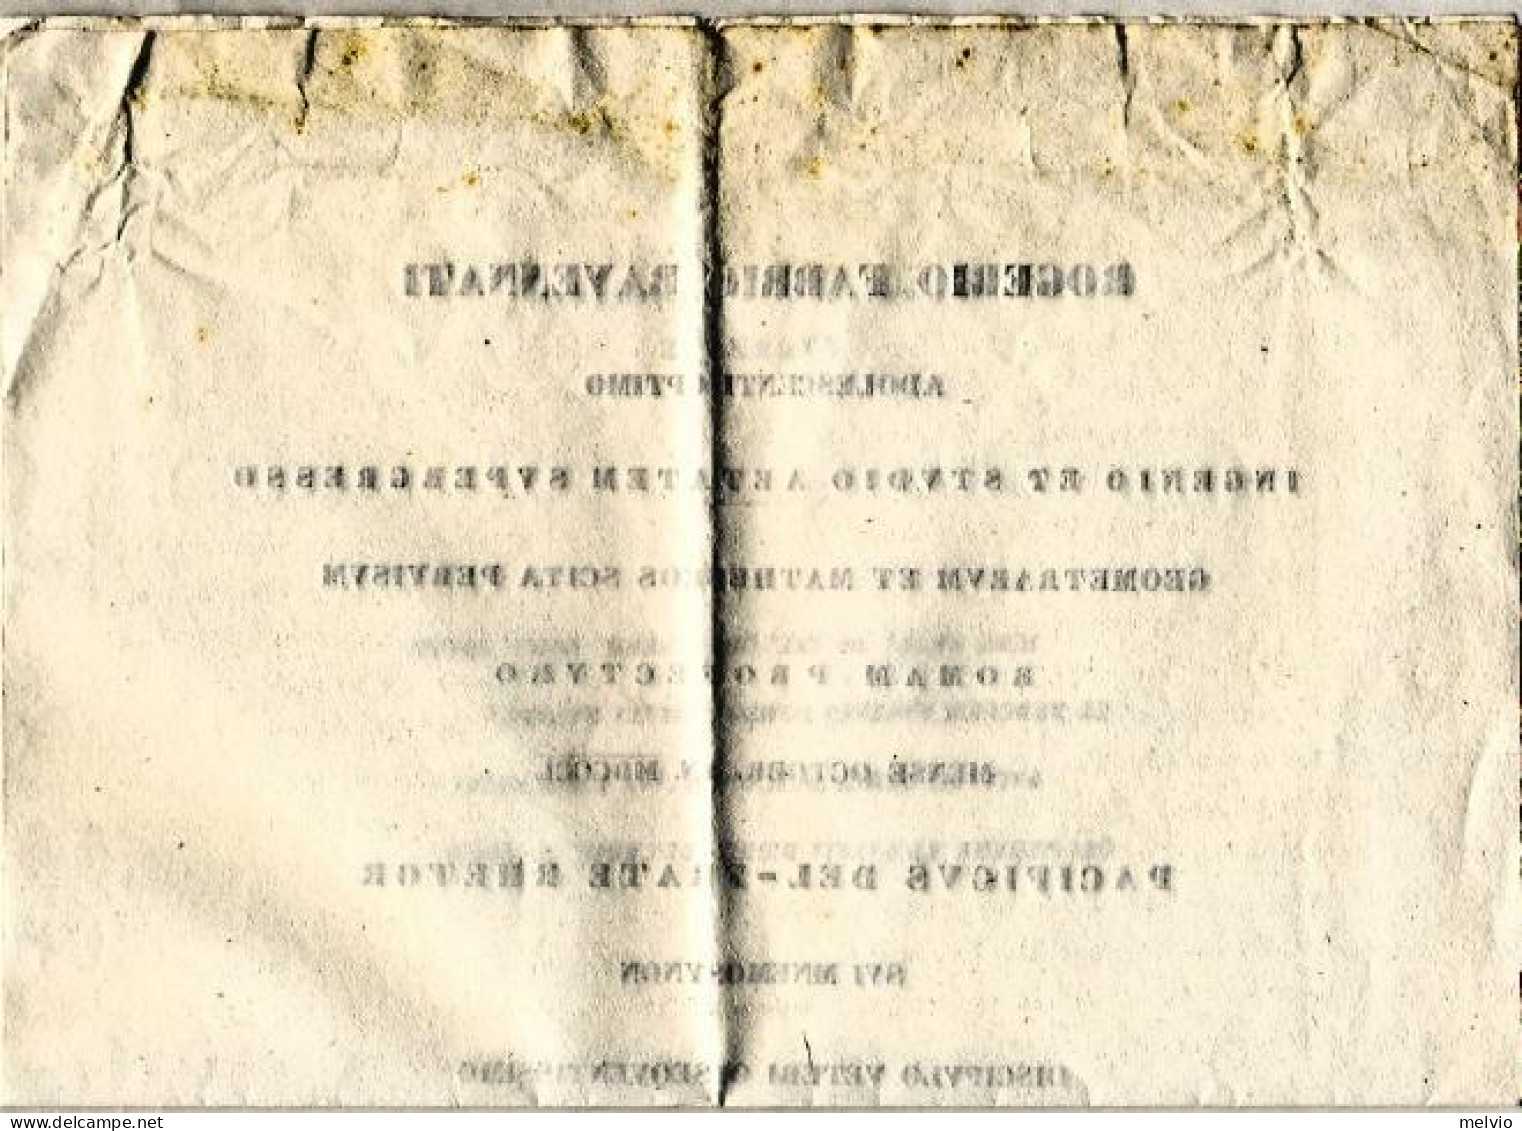 1850-diploma Rilasciato A Rogerio Fabrio Ravennate - Diploma & School Reports